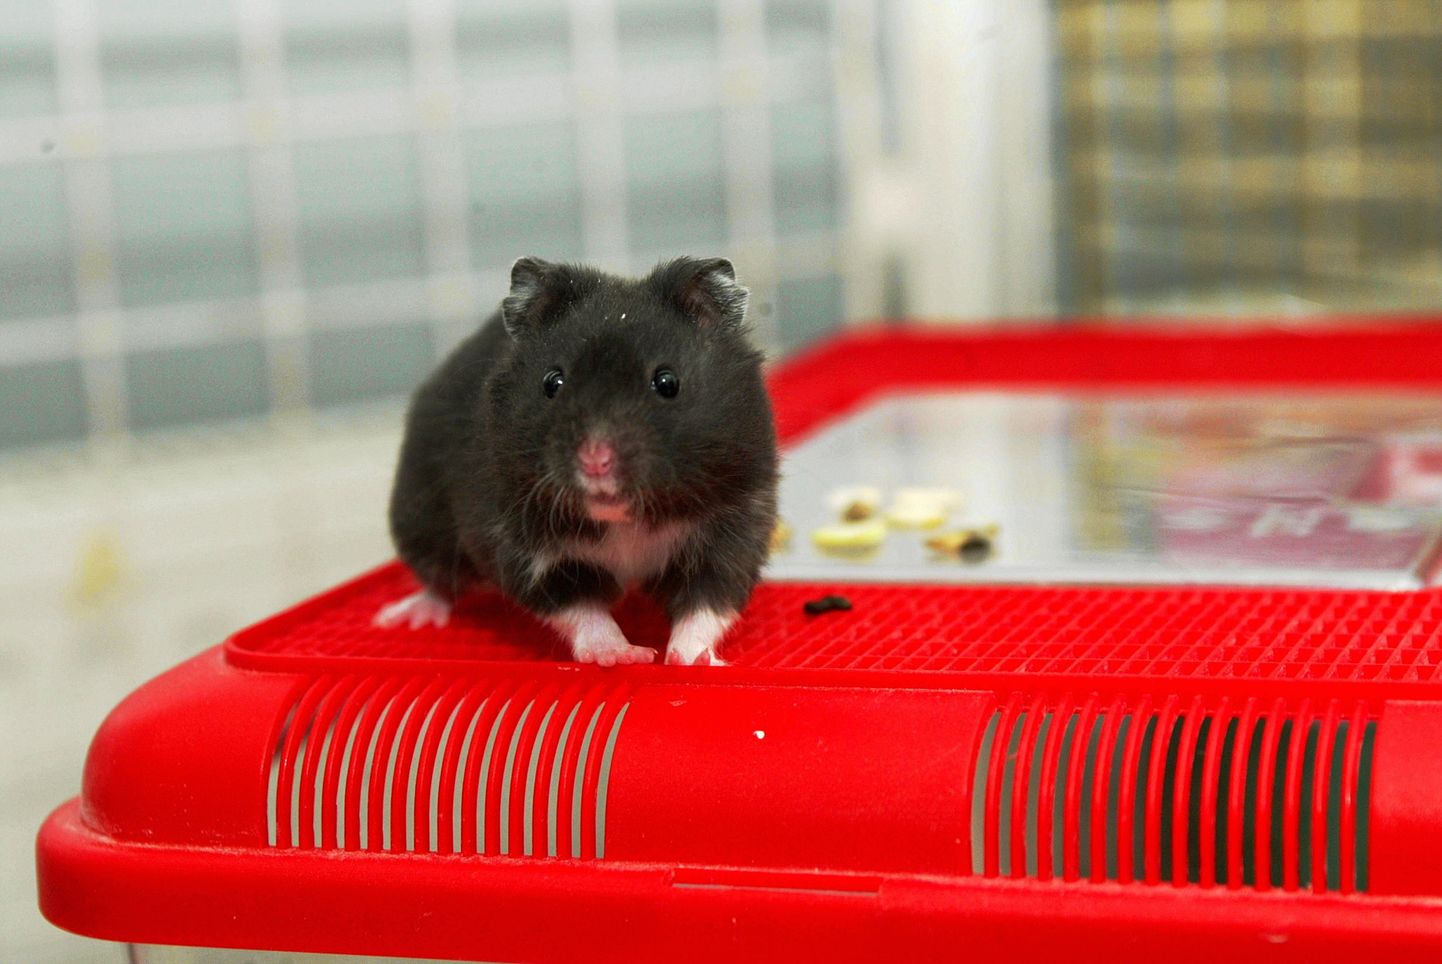 Fotol olev hamster on üles pildistatud lemmikloomapoes.